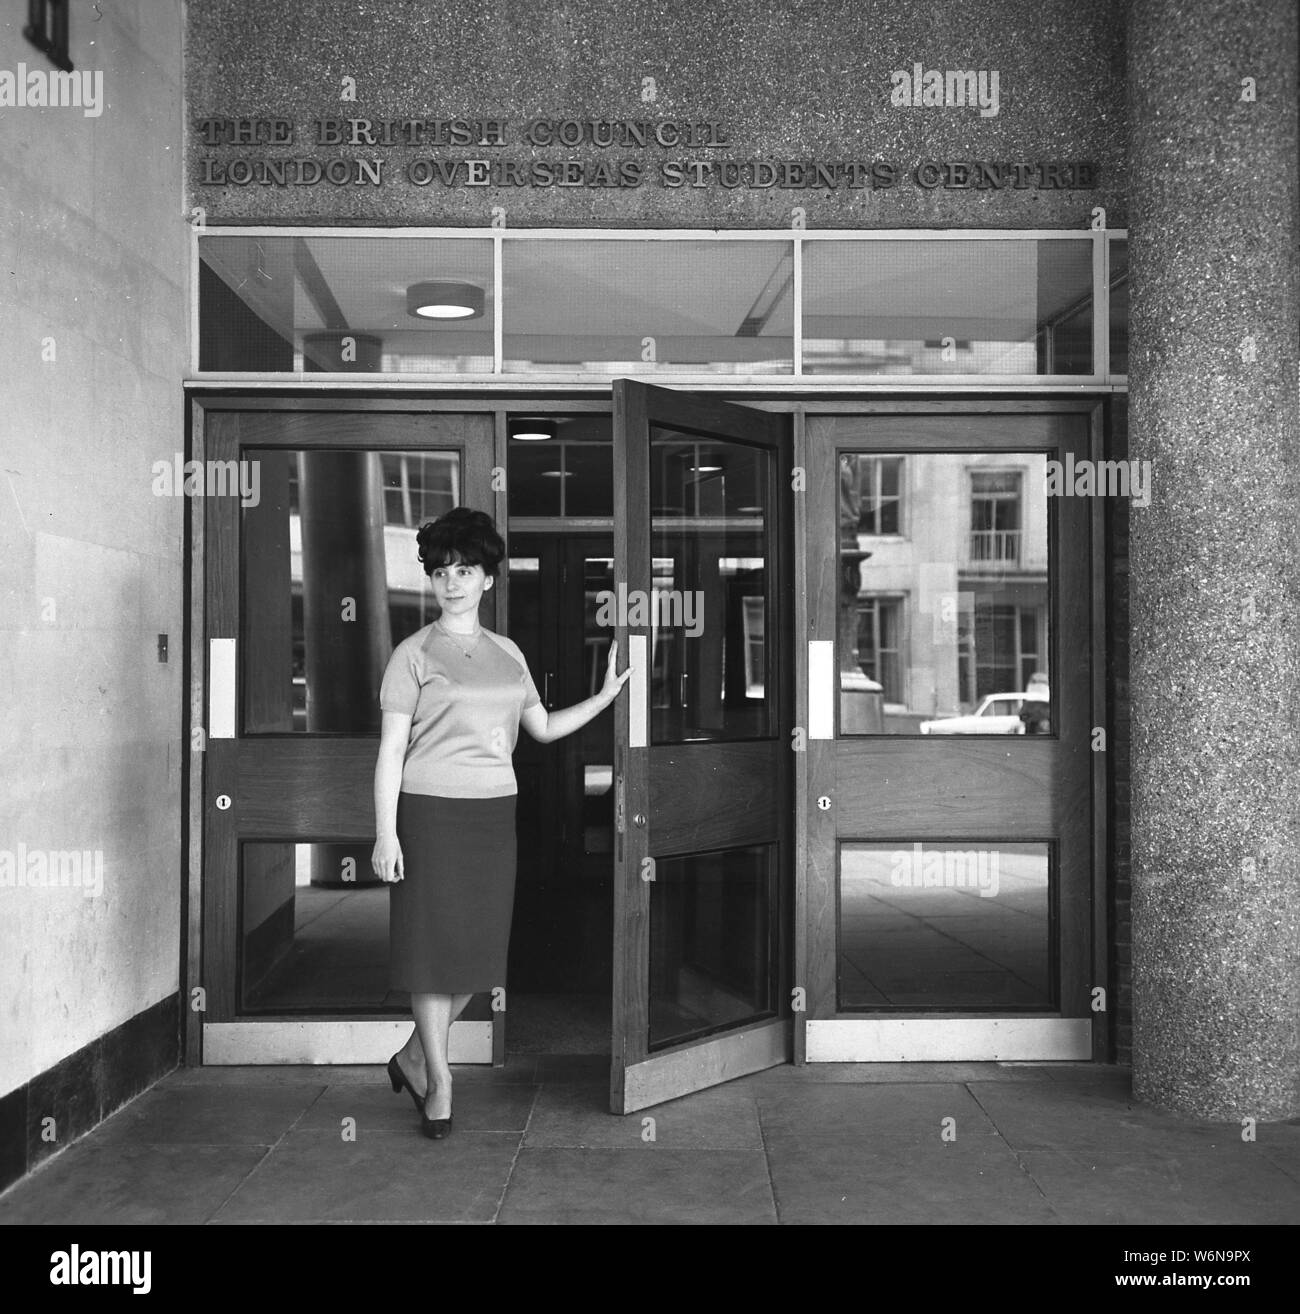 Anni sessanta, storico, una signora in piedi all'ingresso del London oltremare centro studenti del British Council, tenendo aperta la porta, forse in procinto di dare il benvenuto a nuovi arrivati gli studenti stranieri per l'edificio, Londra, Inghilterra, Regno Unito. Foto Stock